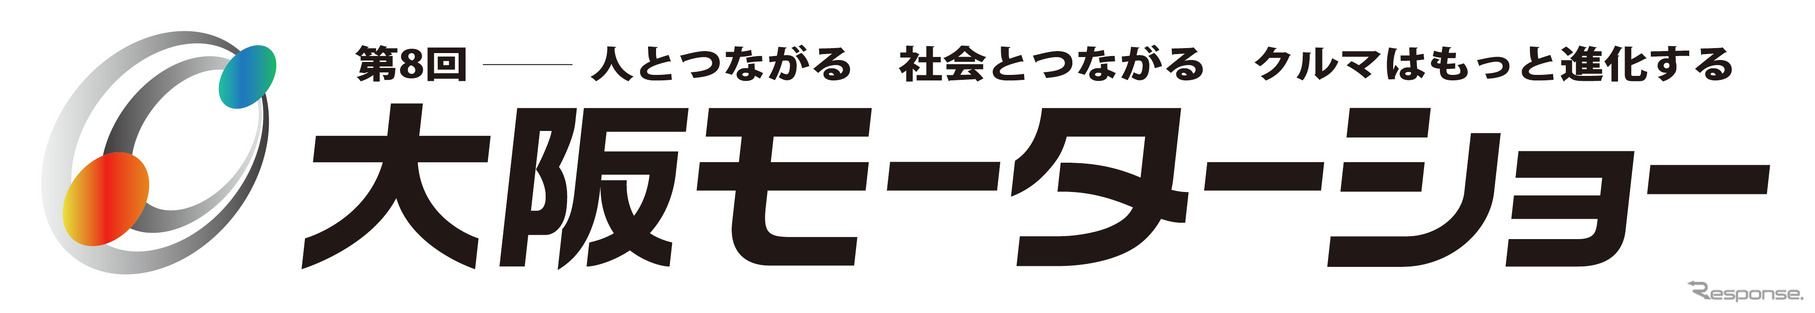 大阪モーターショーのロゴ